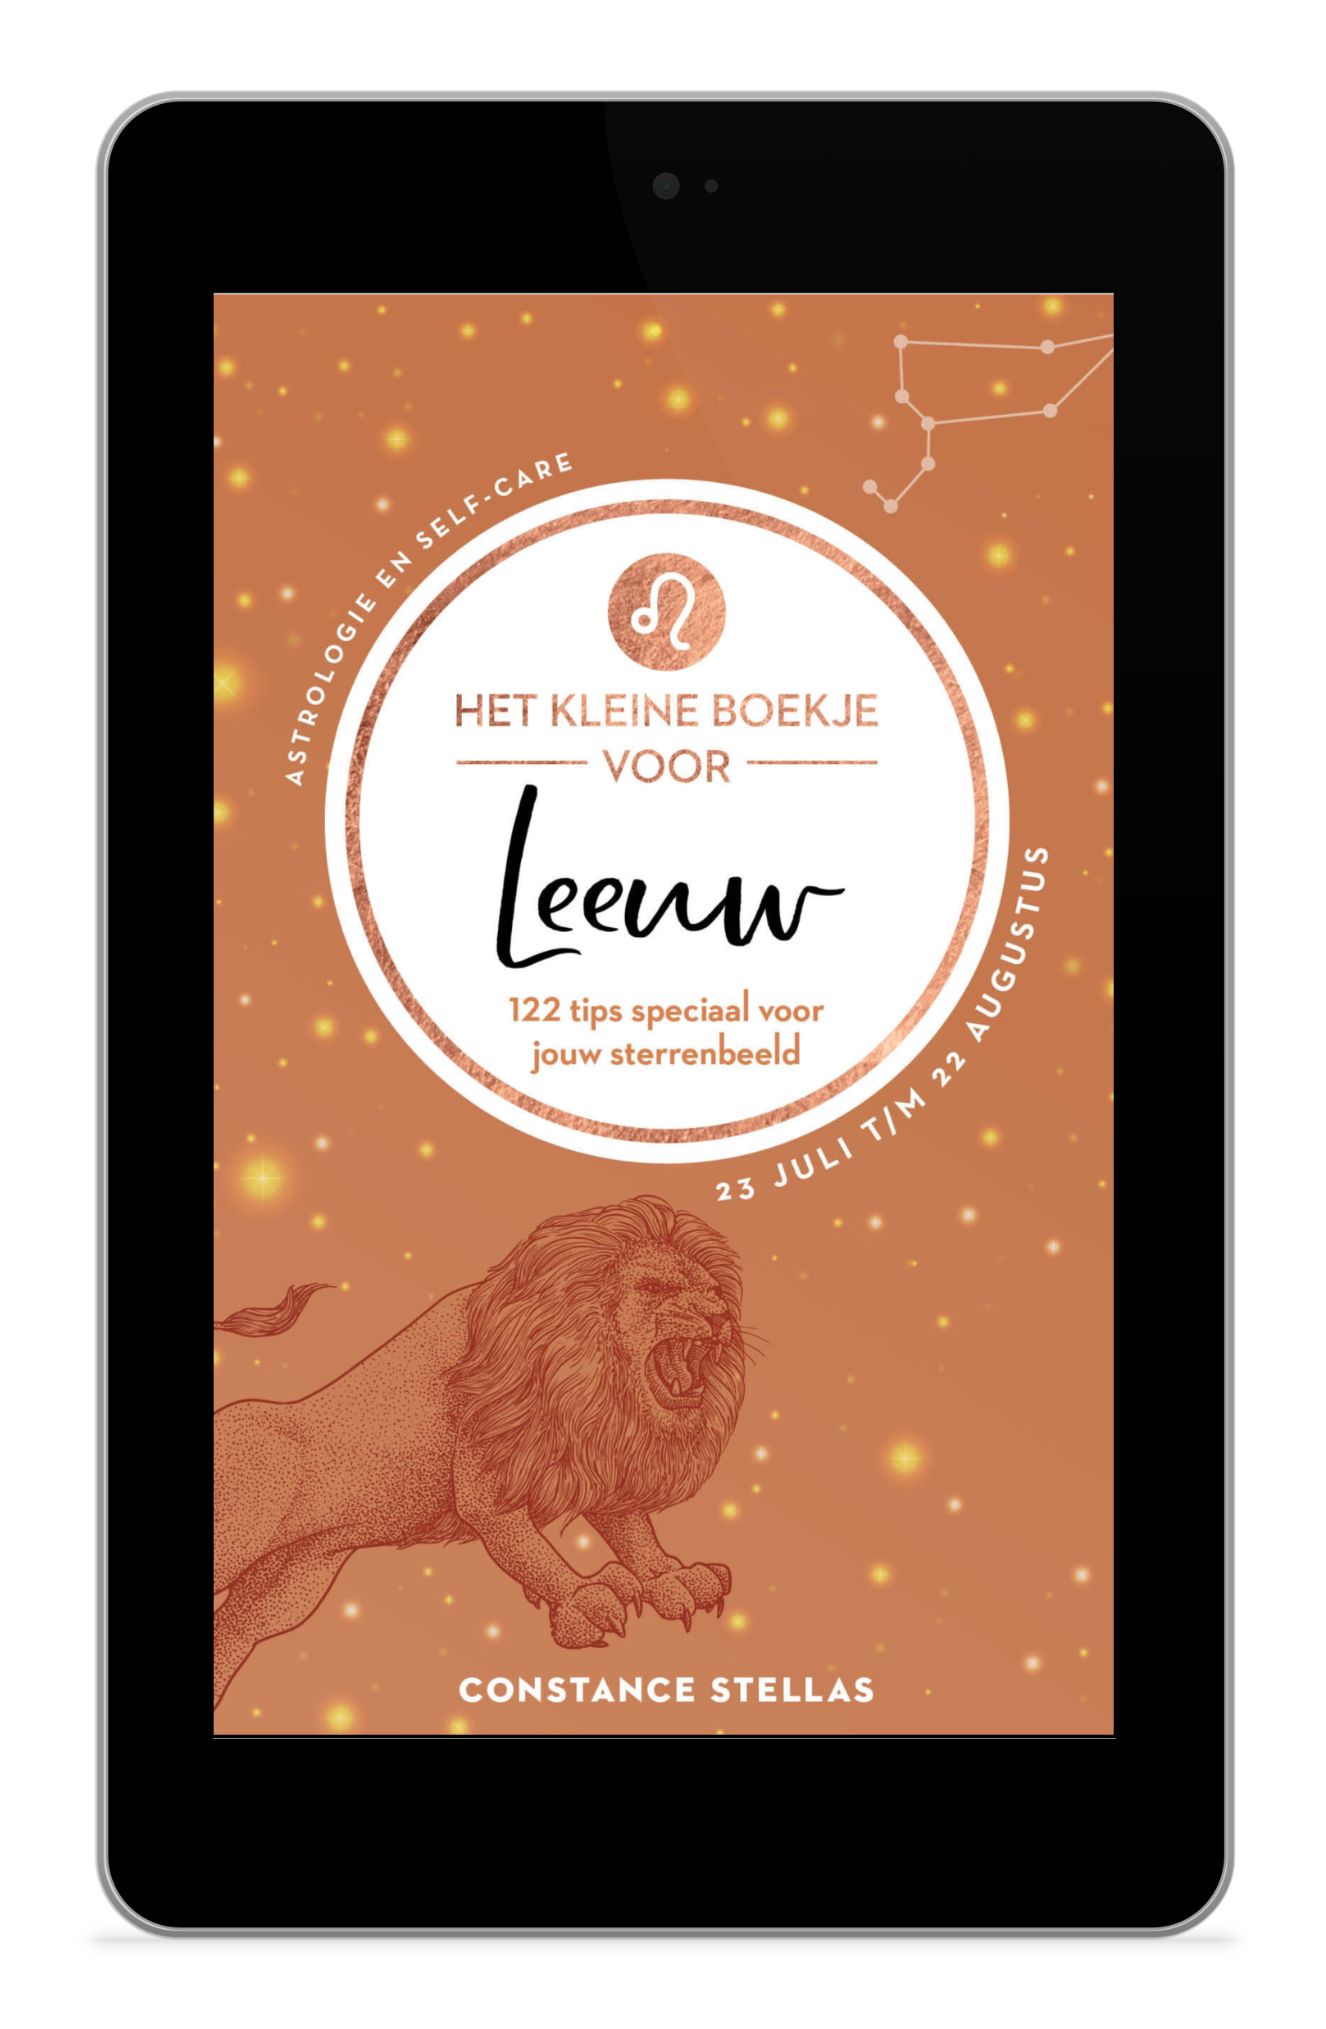 Het kleine e-boekje voor Leeuw